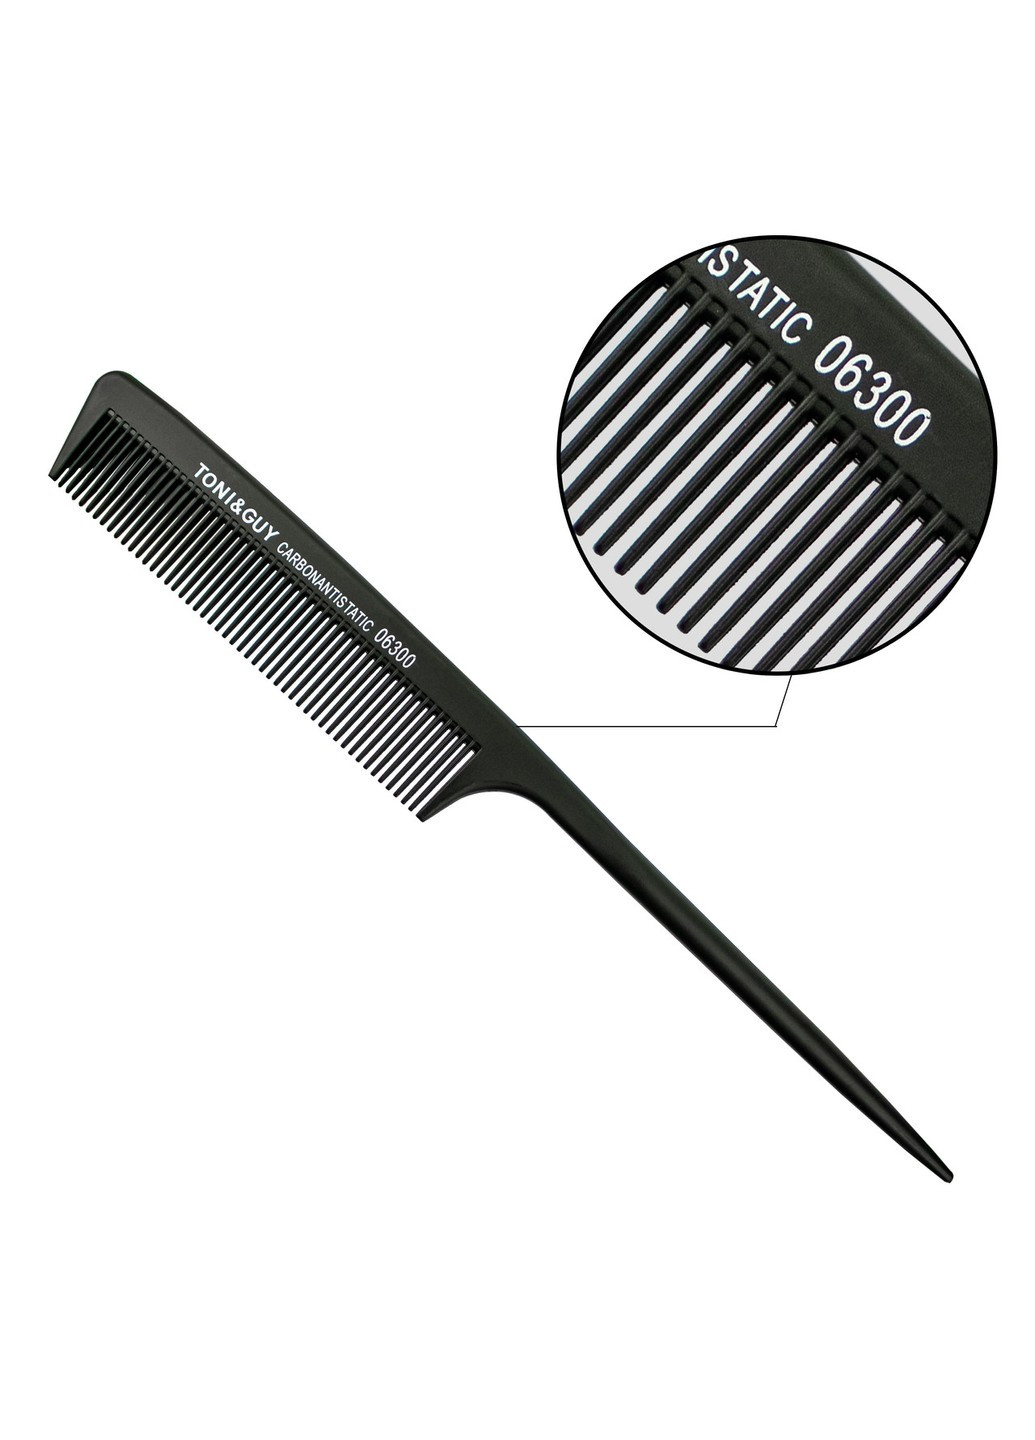 Гребень для волос Carbon T&G черный с ручкой 06300 расчёска для мелирования расческа для стрижки парикмахера Toni & Guy (262292266)